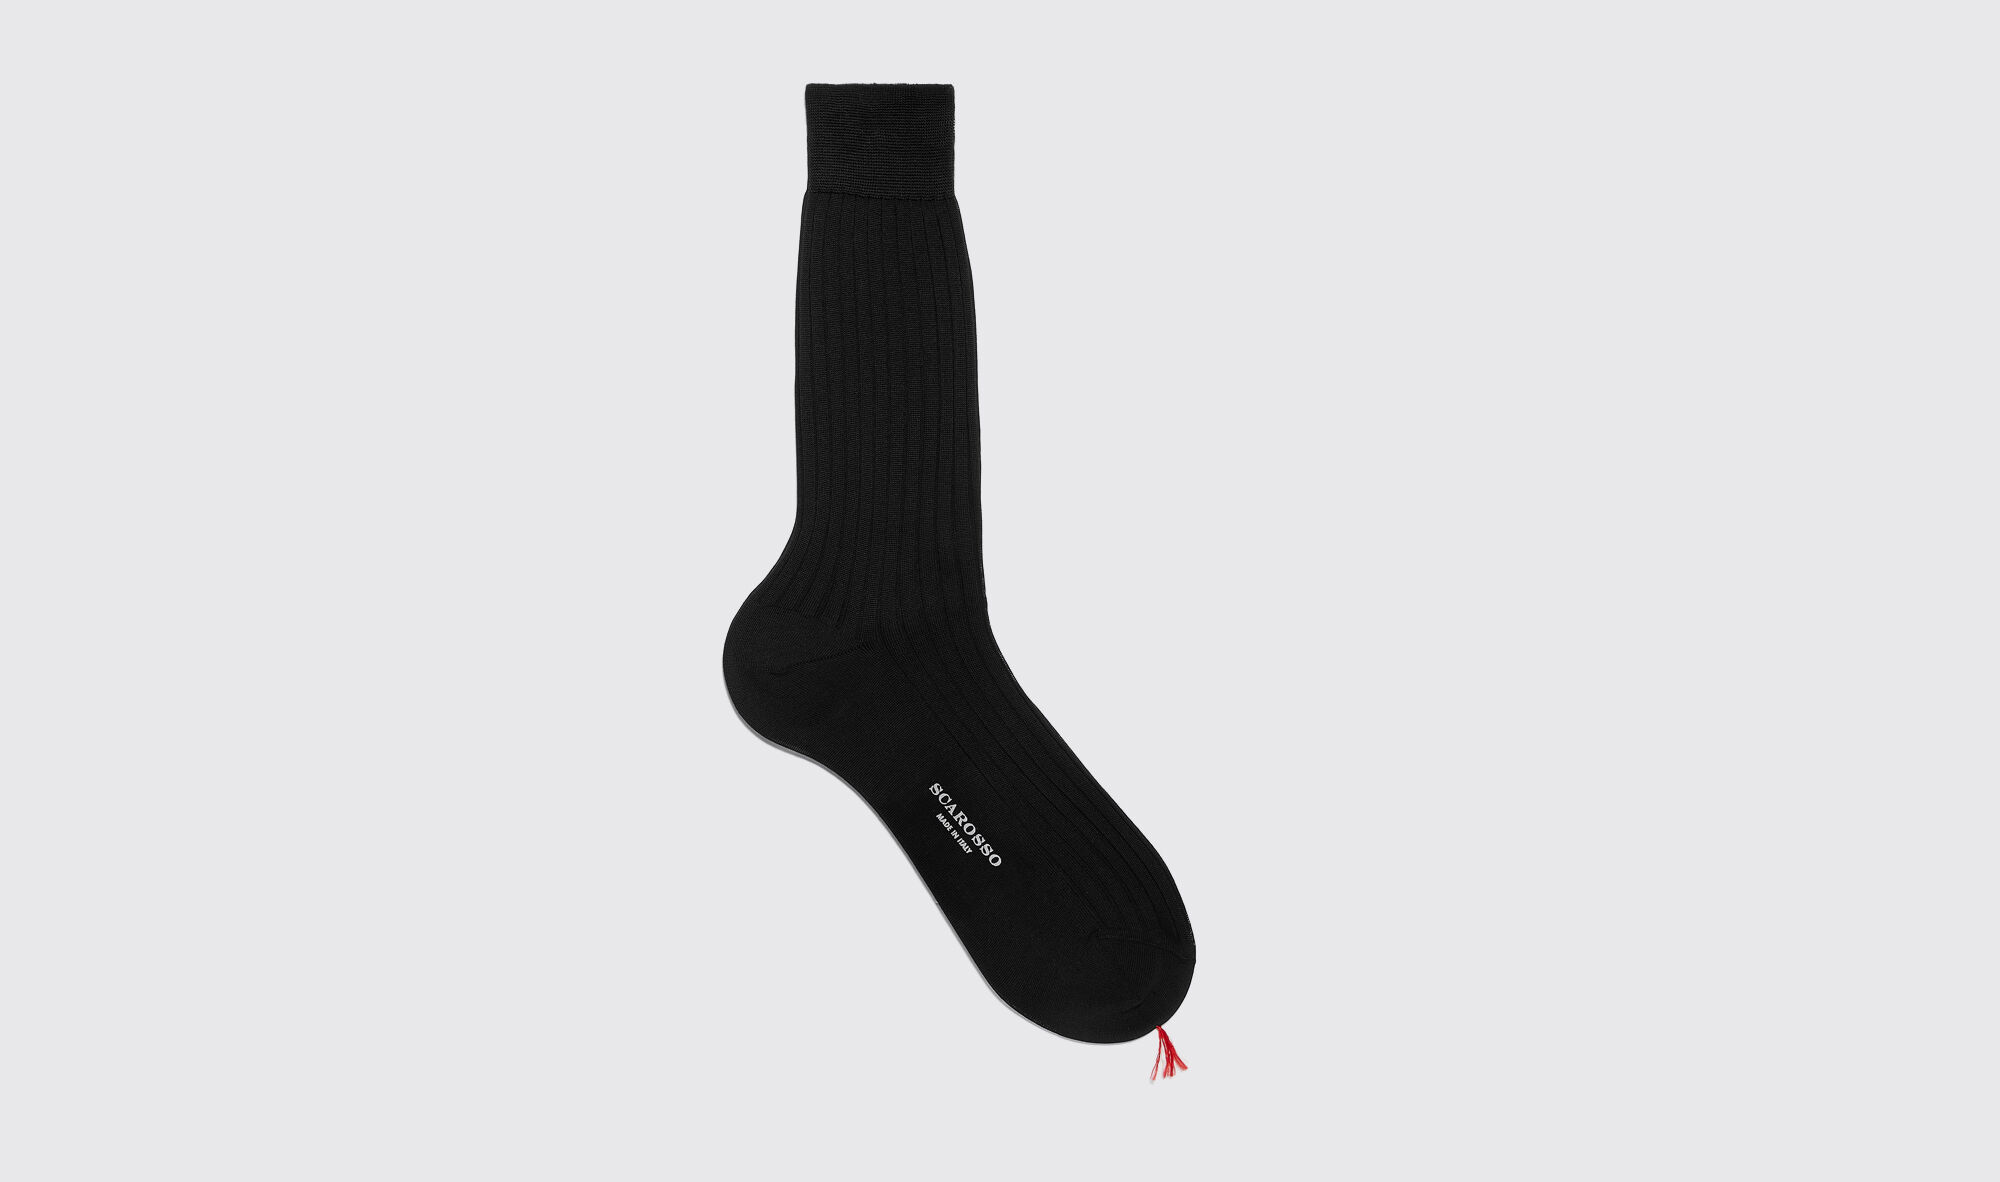 scarosso black cotton calf socks - uomo calze nero - cotone 44-45